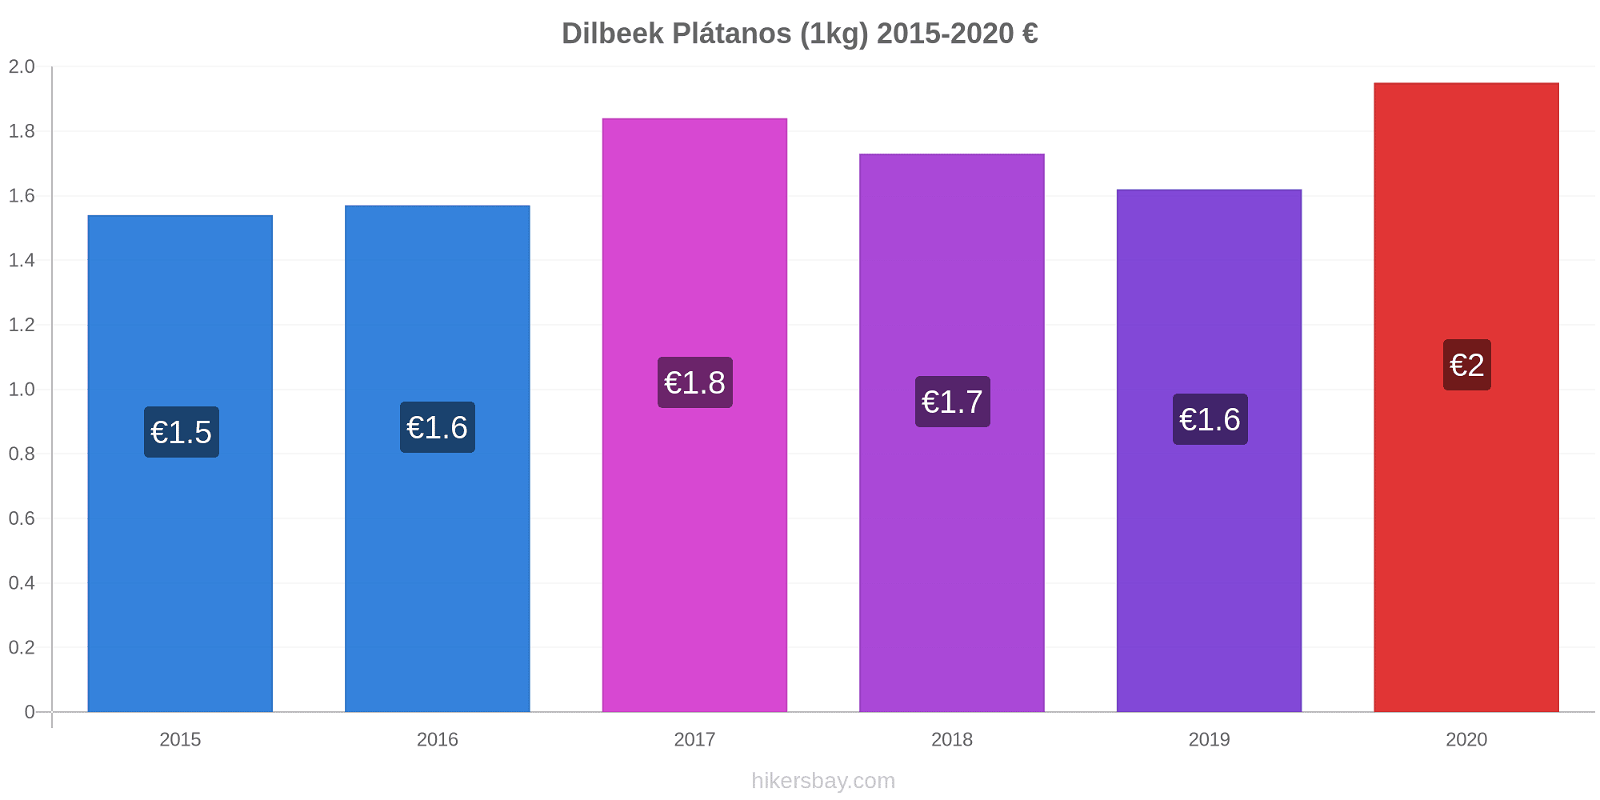 Dilbeek cambios de precios Plátano (1kg) hikersbay.com